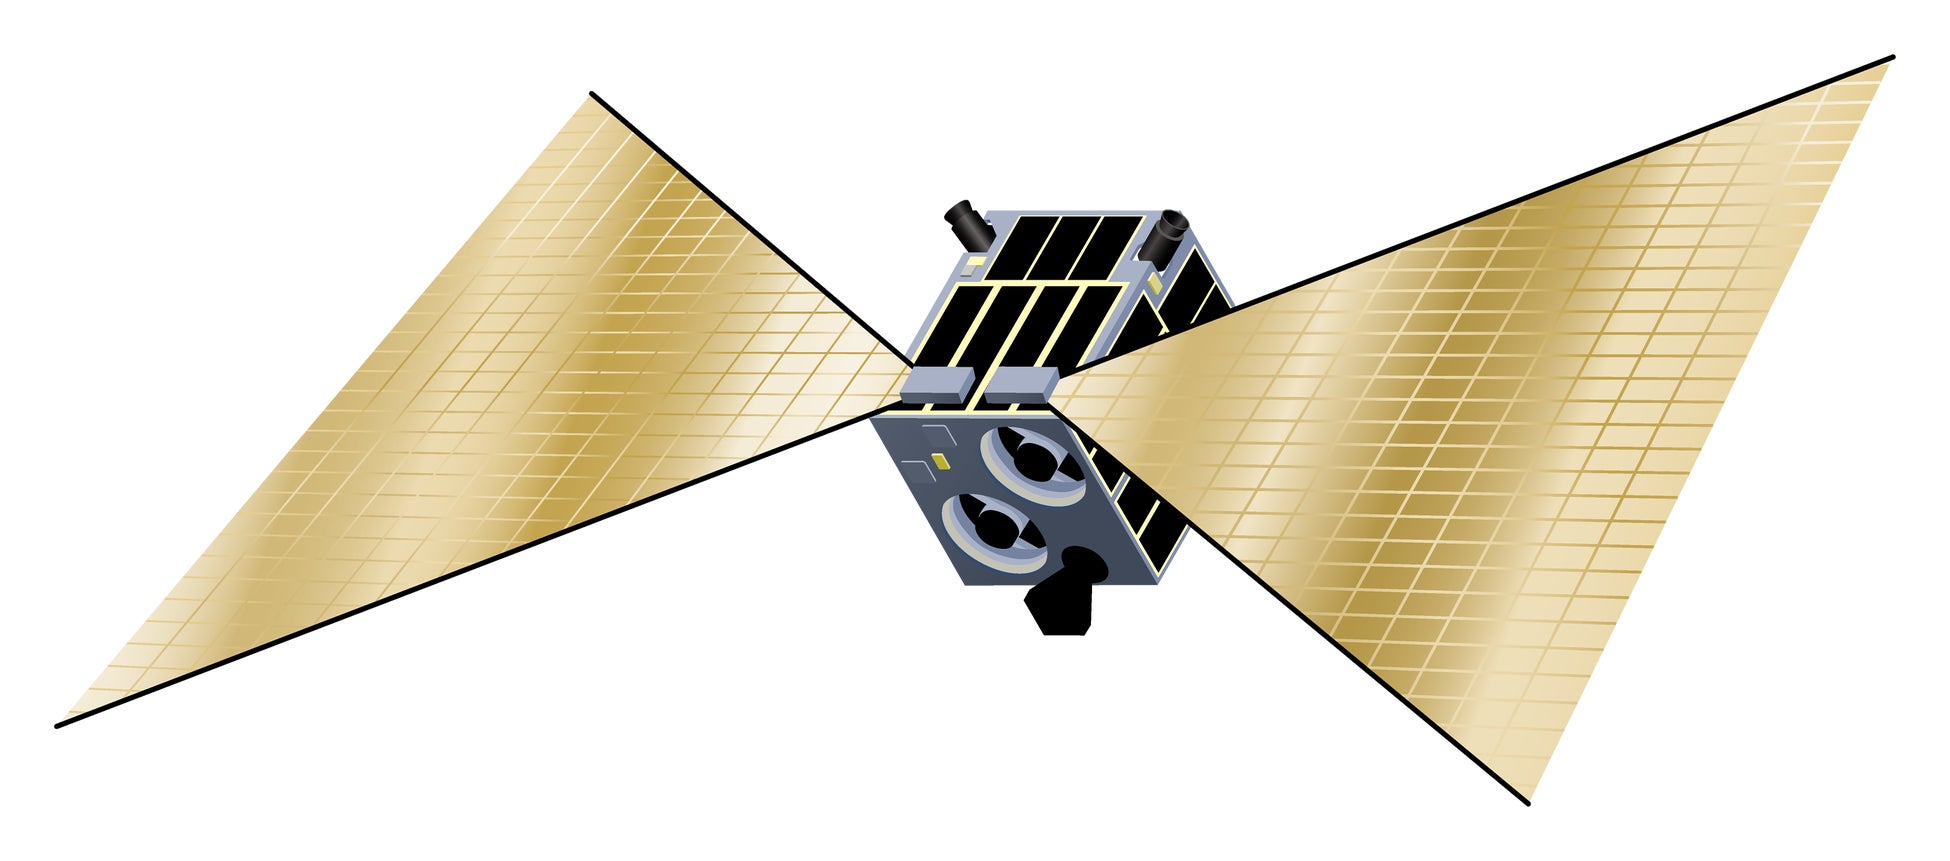 アクセルスペースの「小型衛星用膜面展開型デオービット機構（D-SAIL）」​​。人工衛星の運用終了後に起動し、大きな膜面を展開、大気圏への突入の短縮をはかる機構です。